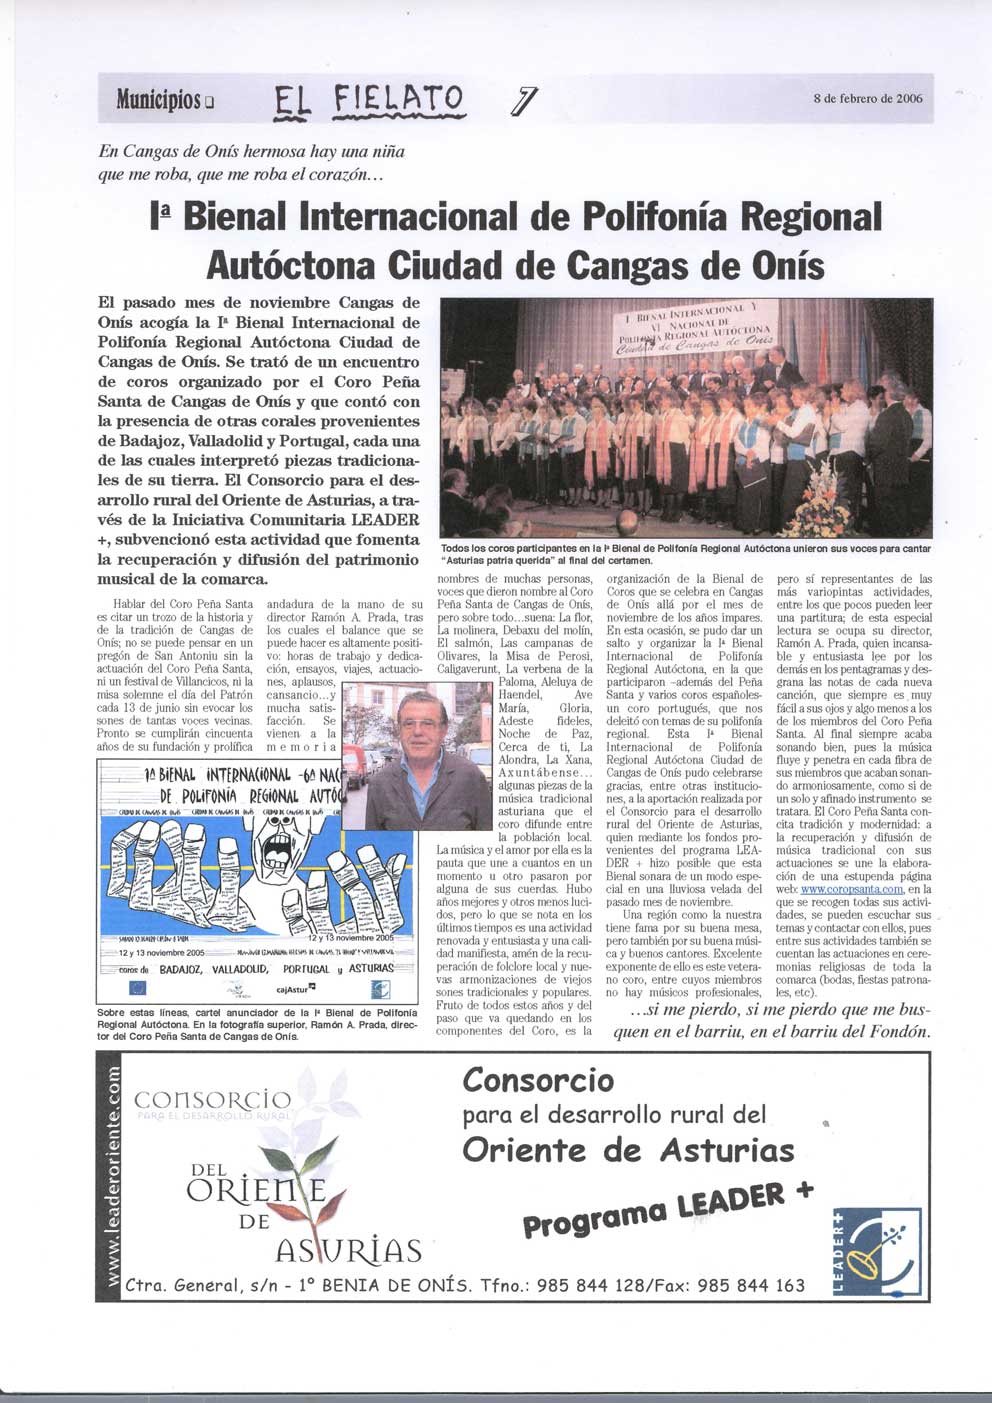 1ª Bienal Internacional de Polifonía Regional Autóctona “Ciudad de Cangas de Onís”